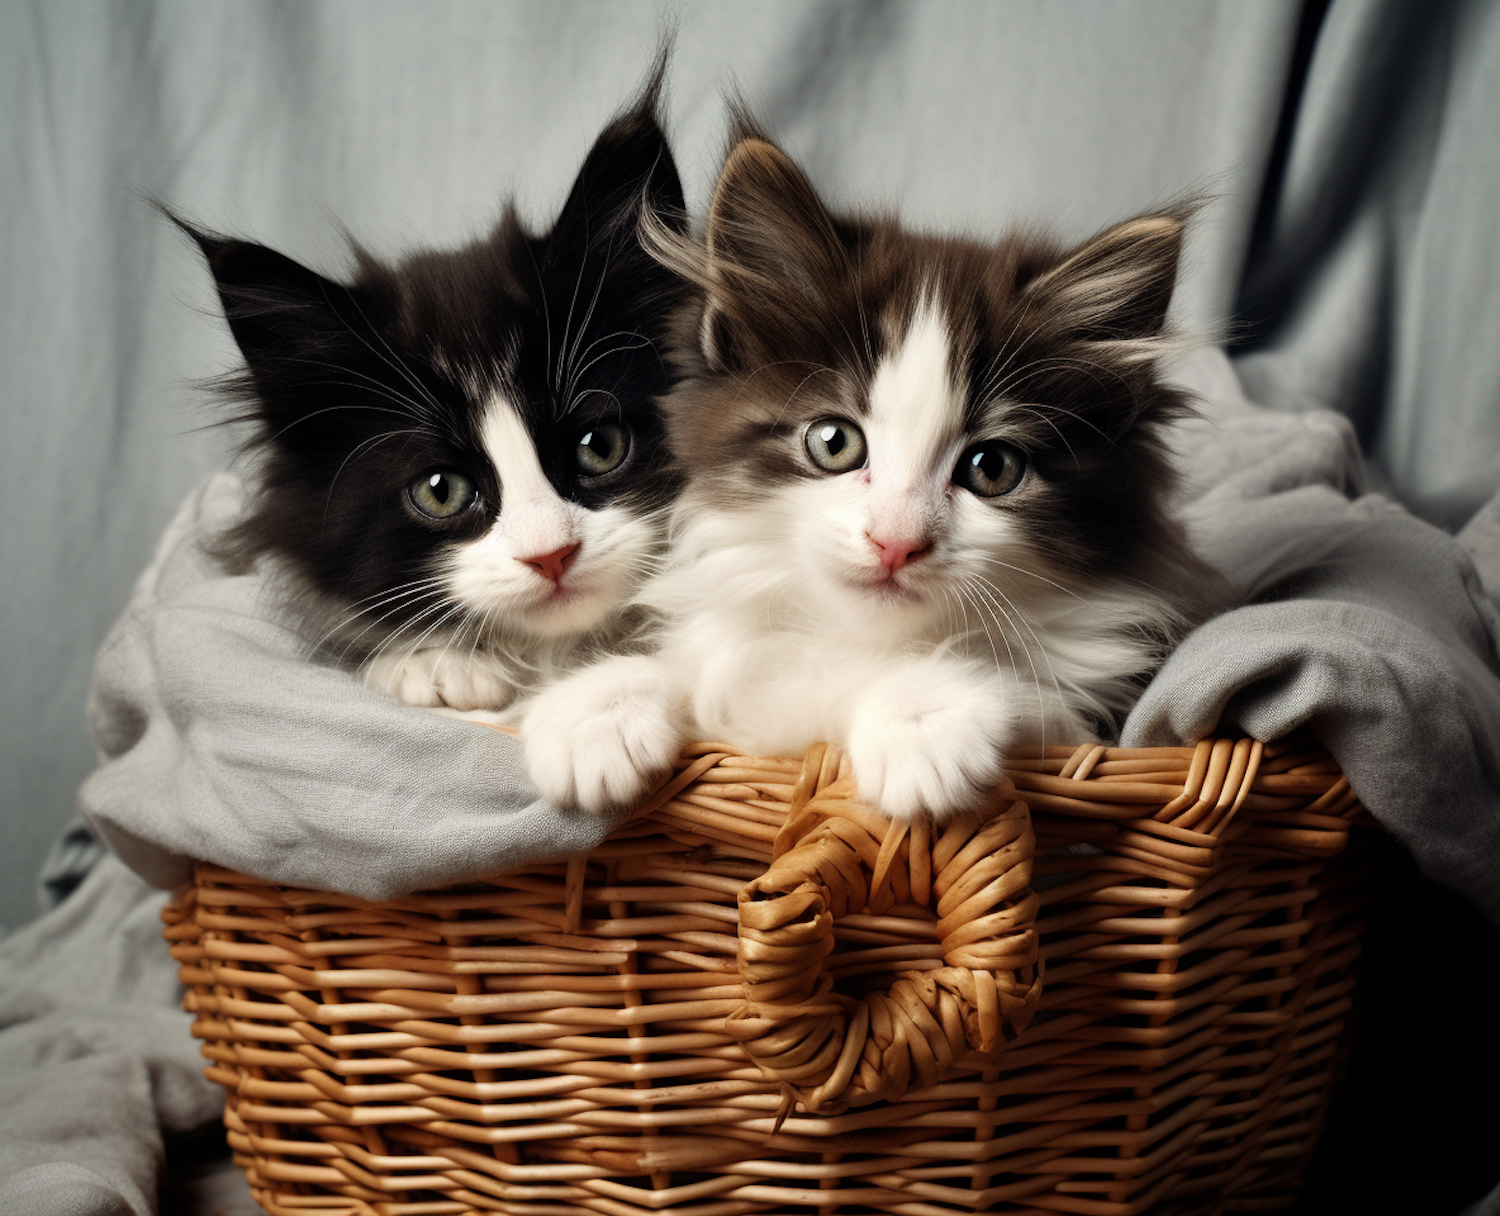 YinYang Basket Kittens